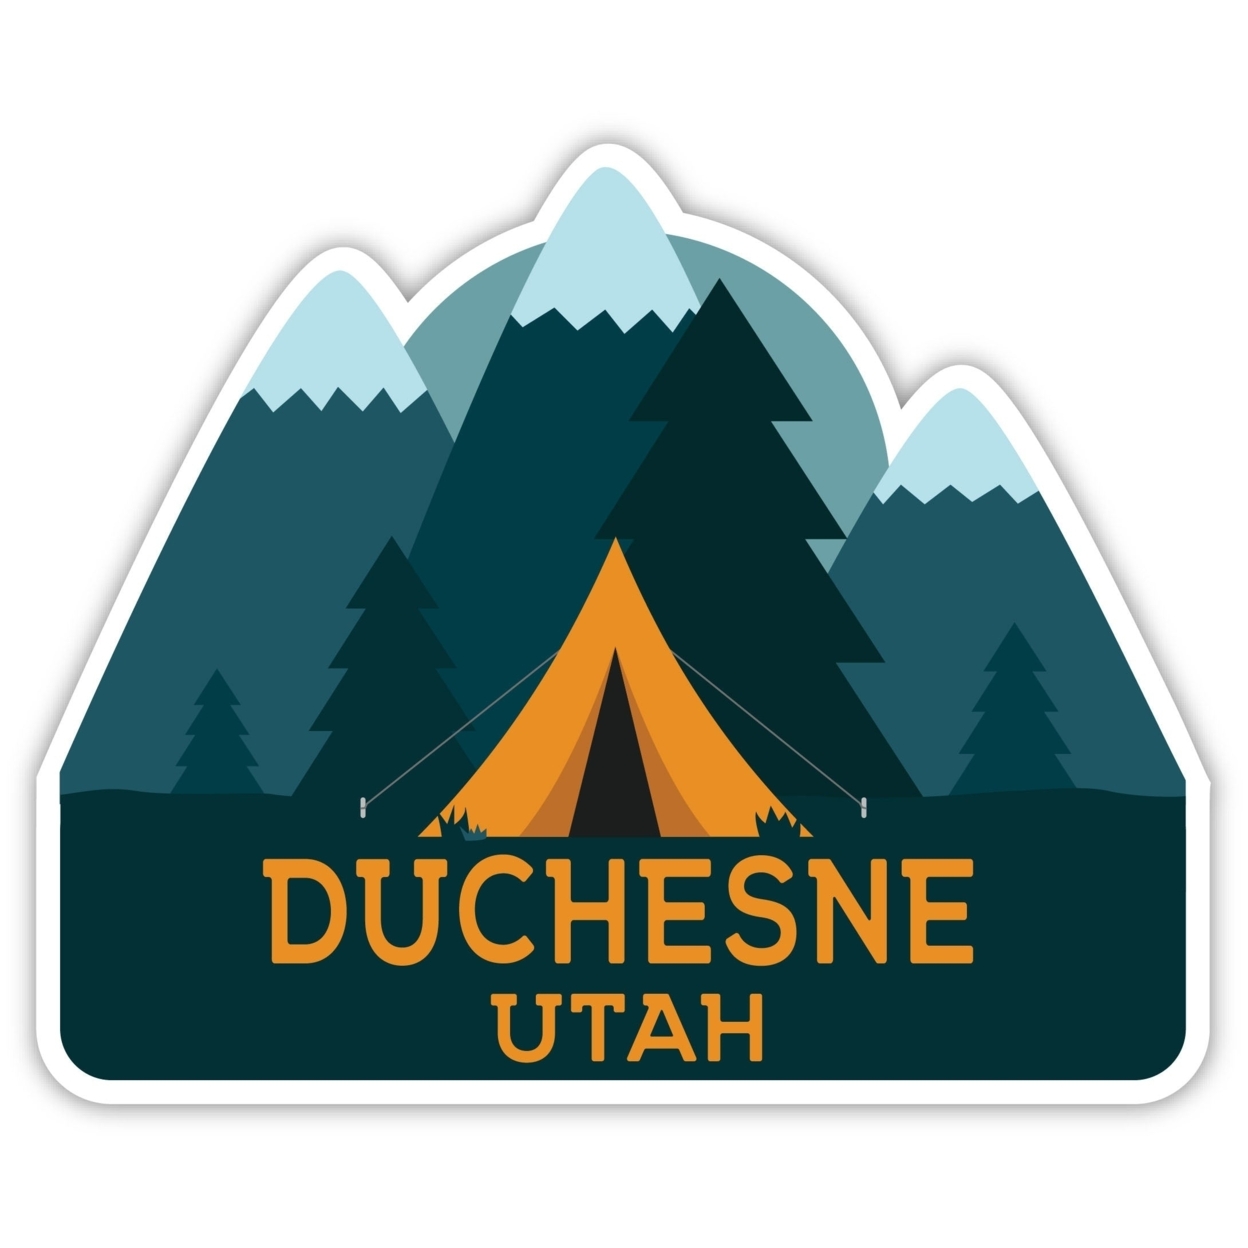 Duchesne Utah Souvenir Decorative Stickers (Choose Theme And Size) - Single Unit, 8-Inch, Tent